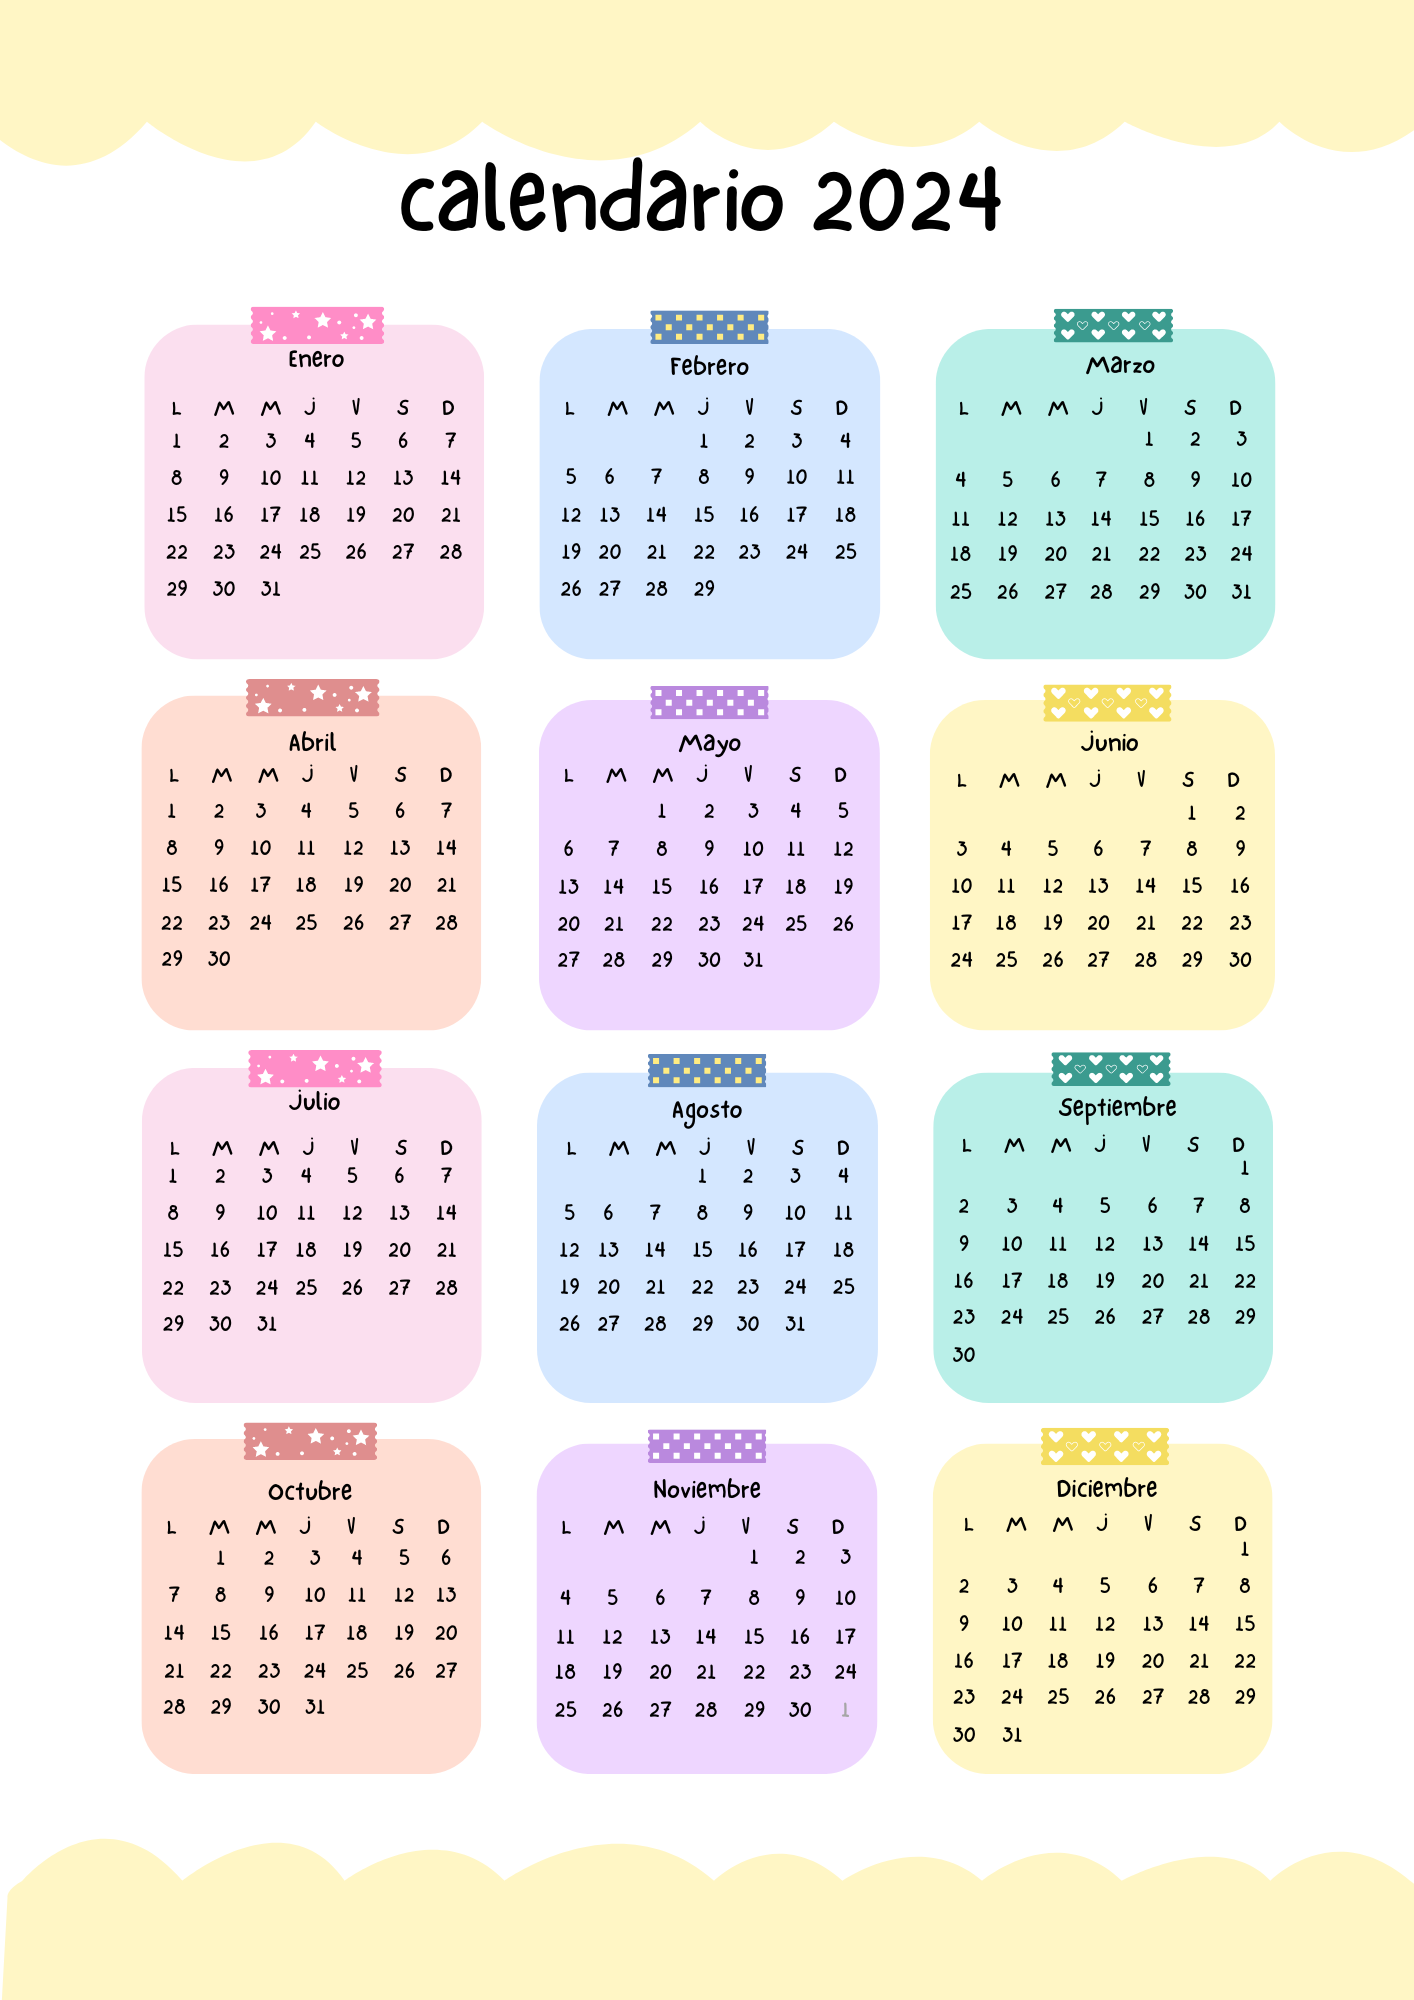 Calendario anual colorido 2024 (JPG)